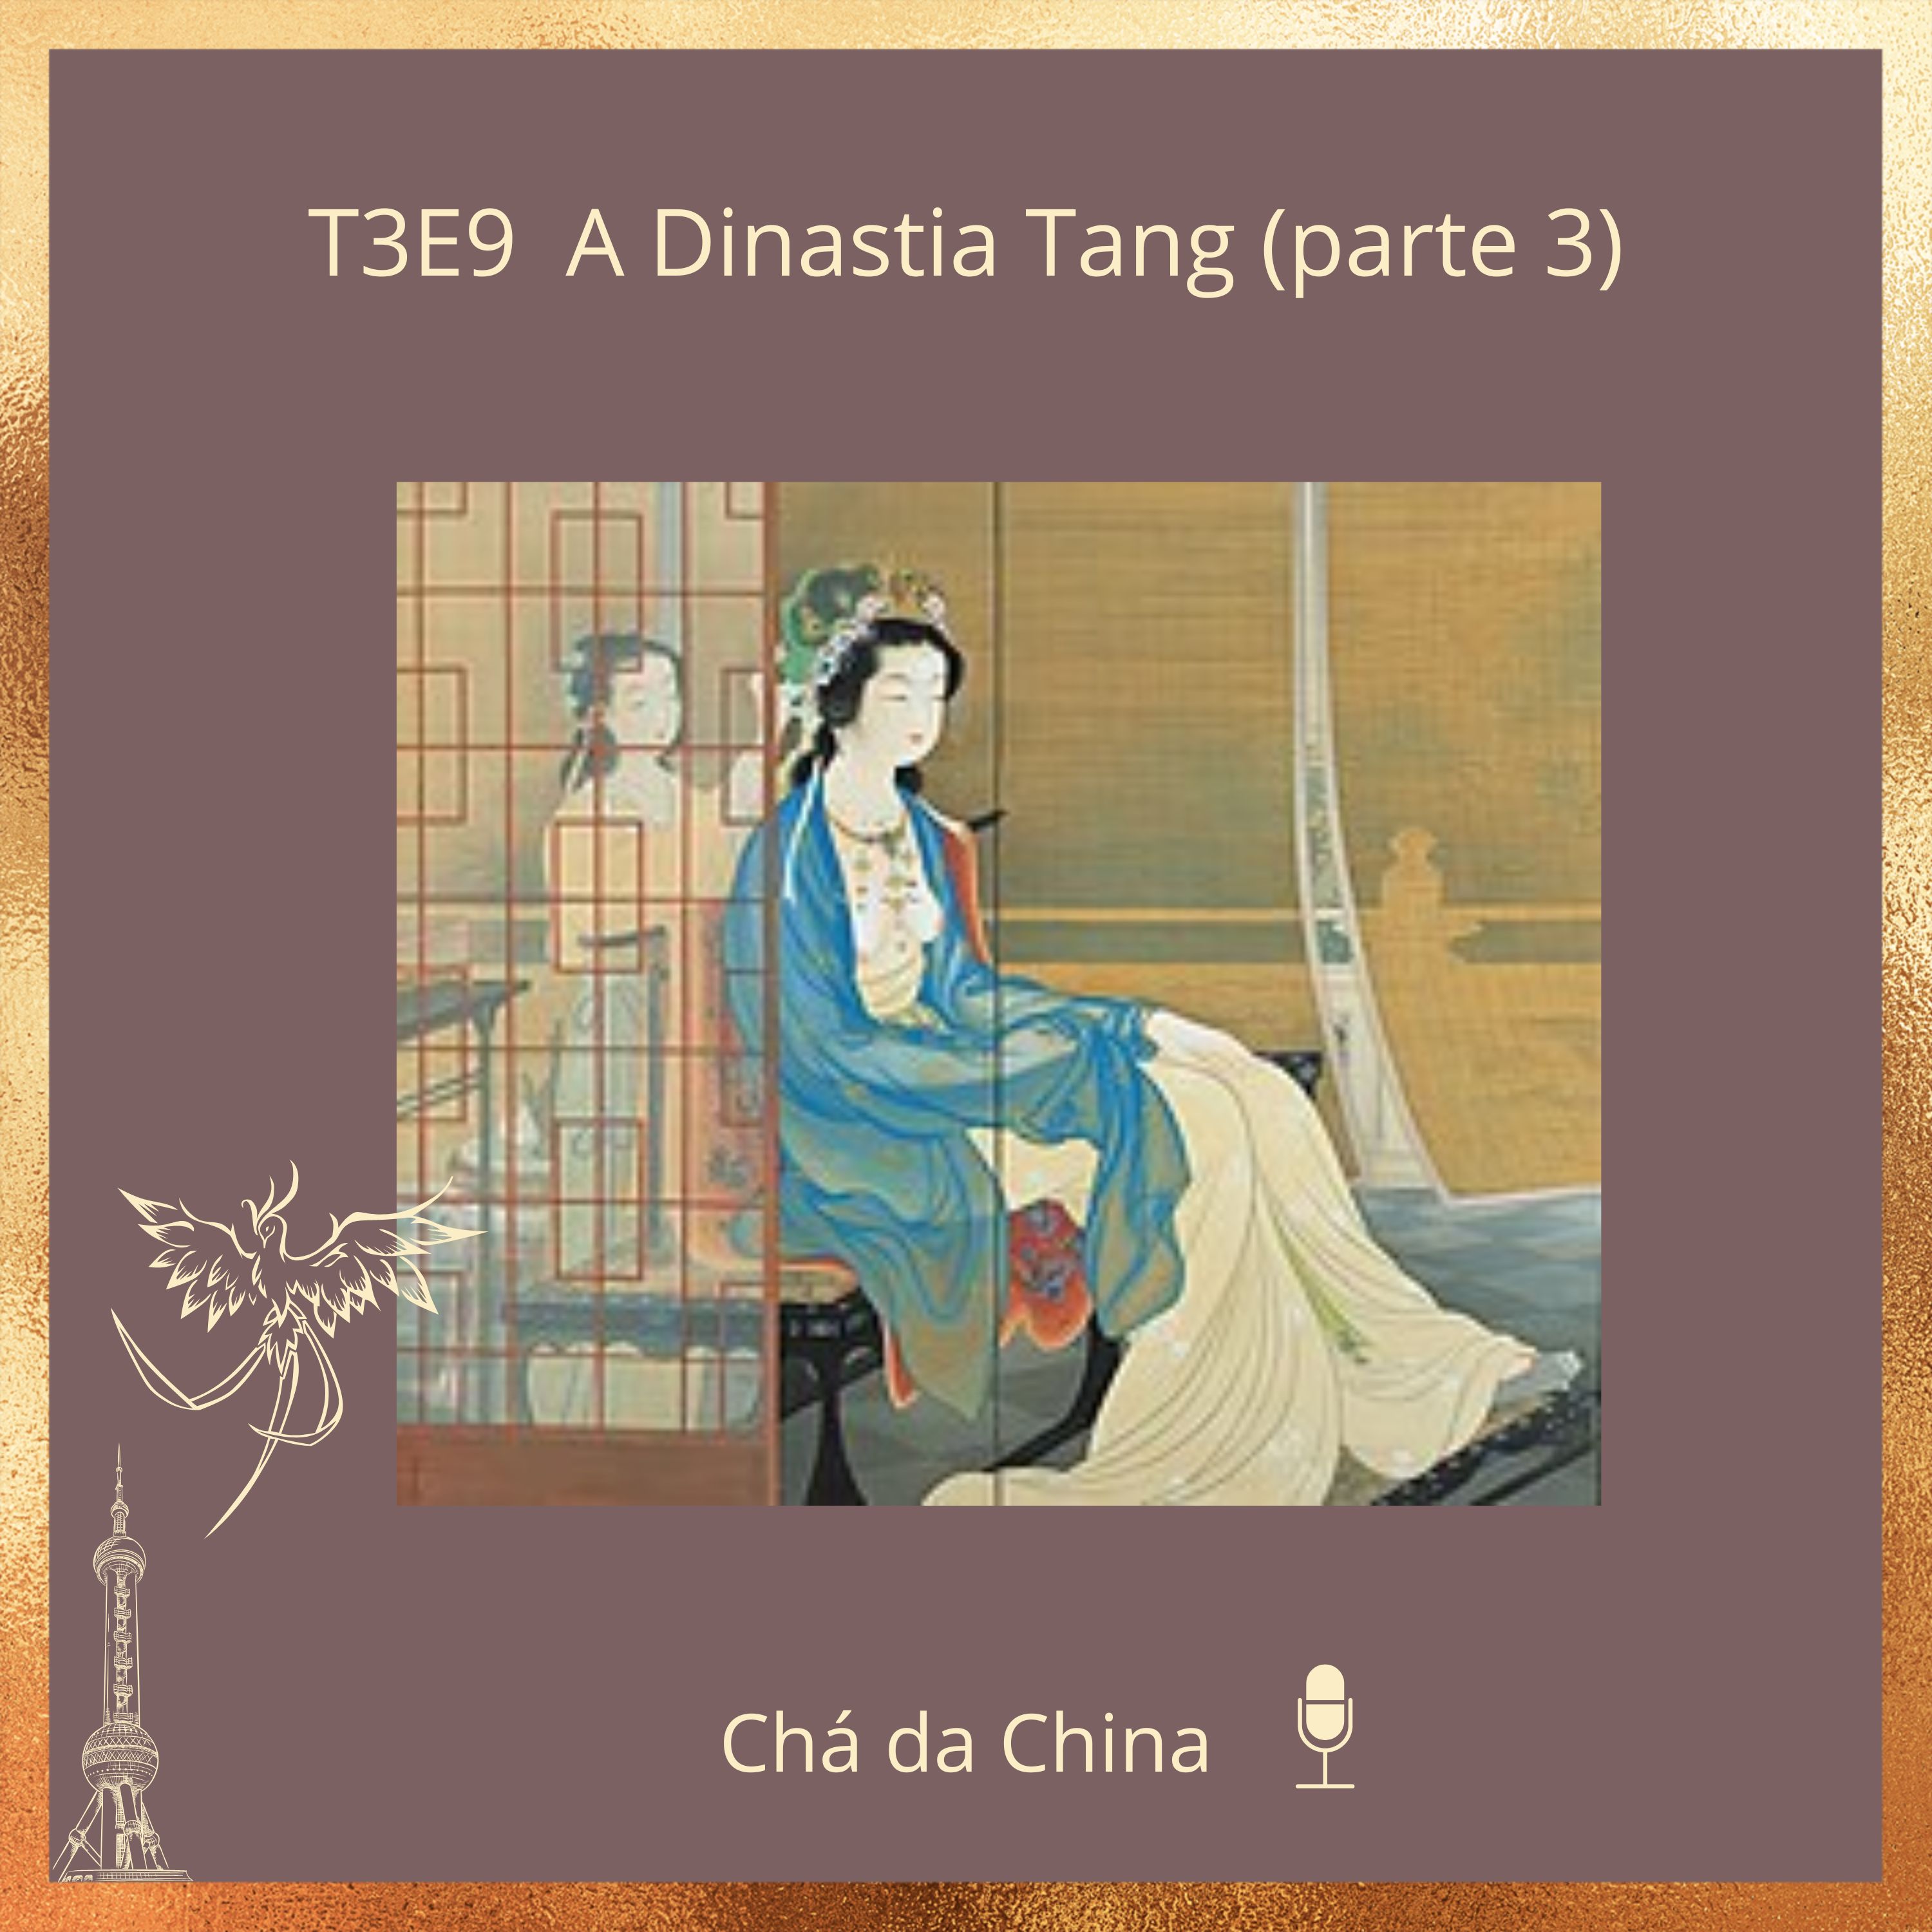 T3E9_A_Dinastia_Tang_parte_3_-capa99sbh.jpg